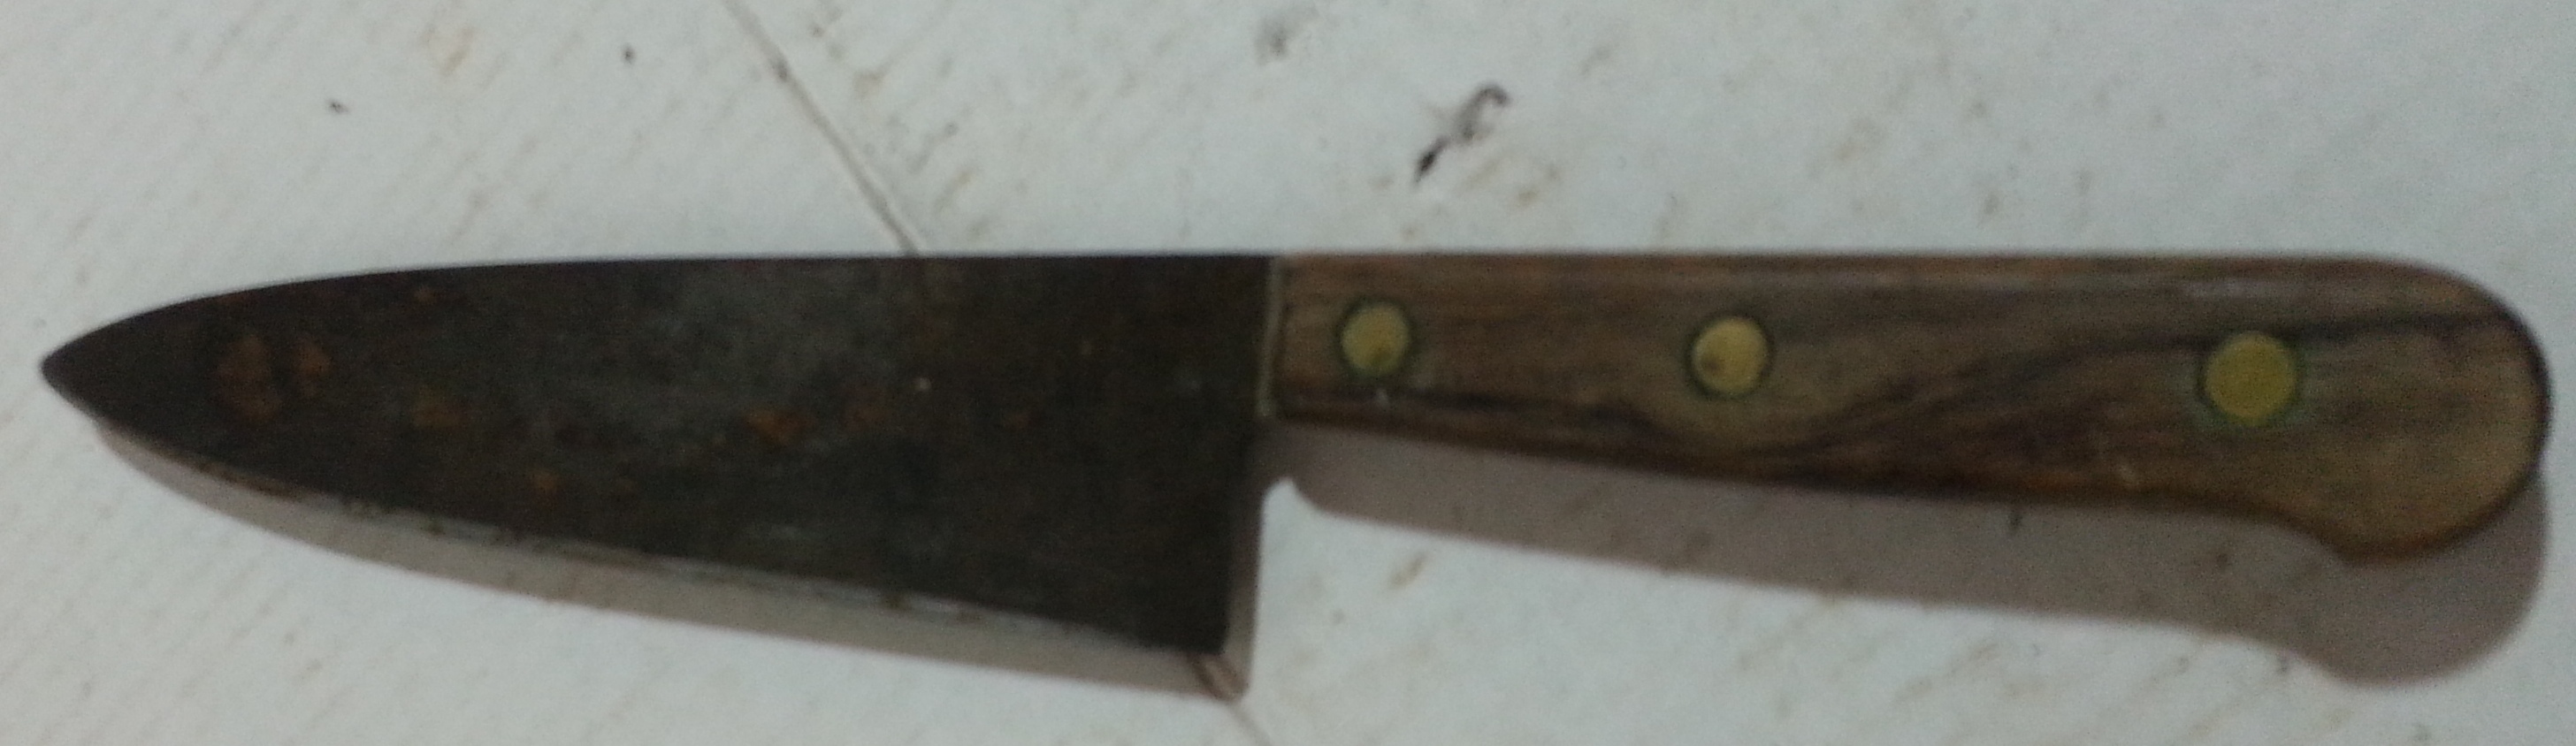 antique knife